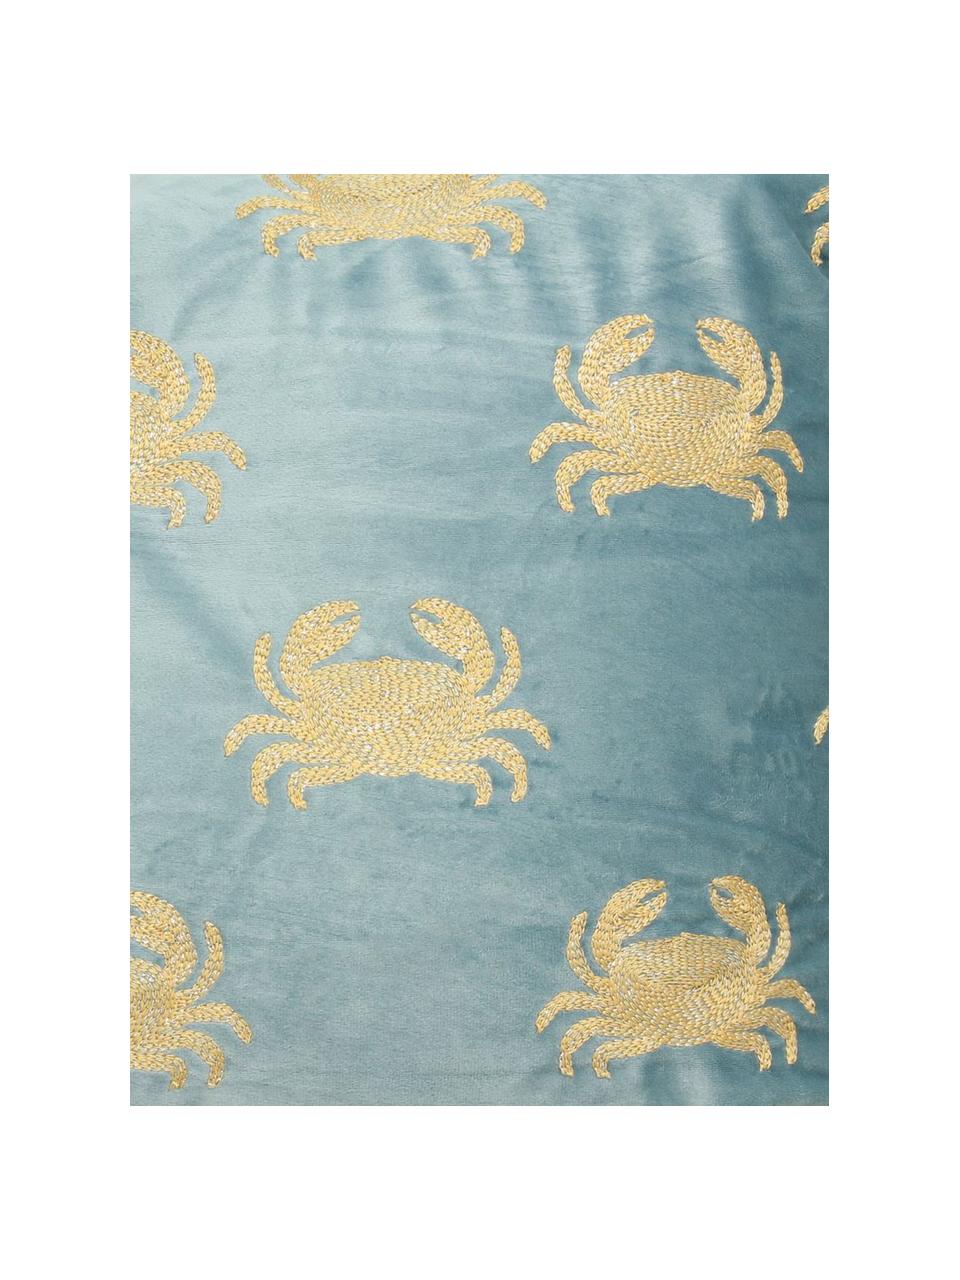 Coussin en velours brodé Crab, 100 % velours

Veuillez considérer que la couleur du velours paraît plus claire ou plus foncée en fonction de la source lumineuse et de l'orientation des fibres, Bleu, couleur dorée, larg. 40 x long. 55 cm